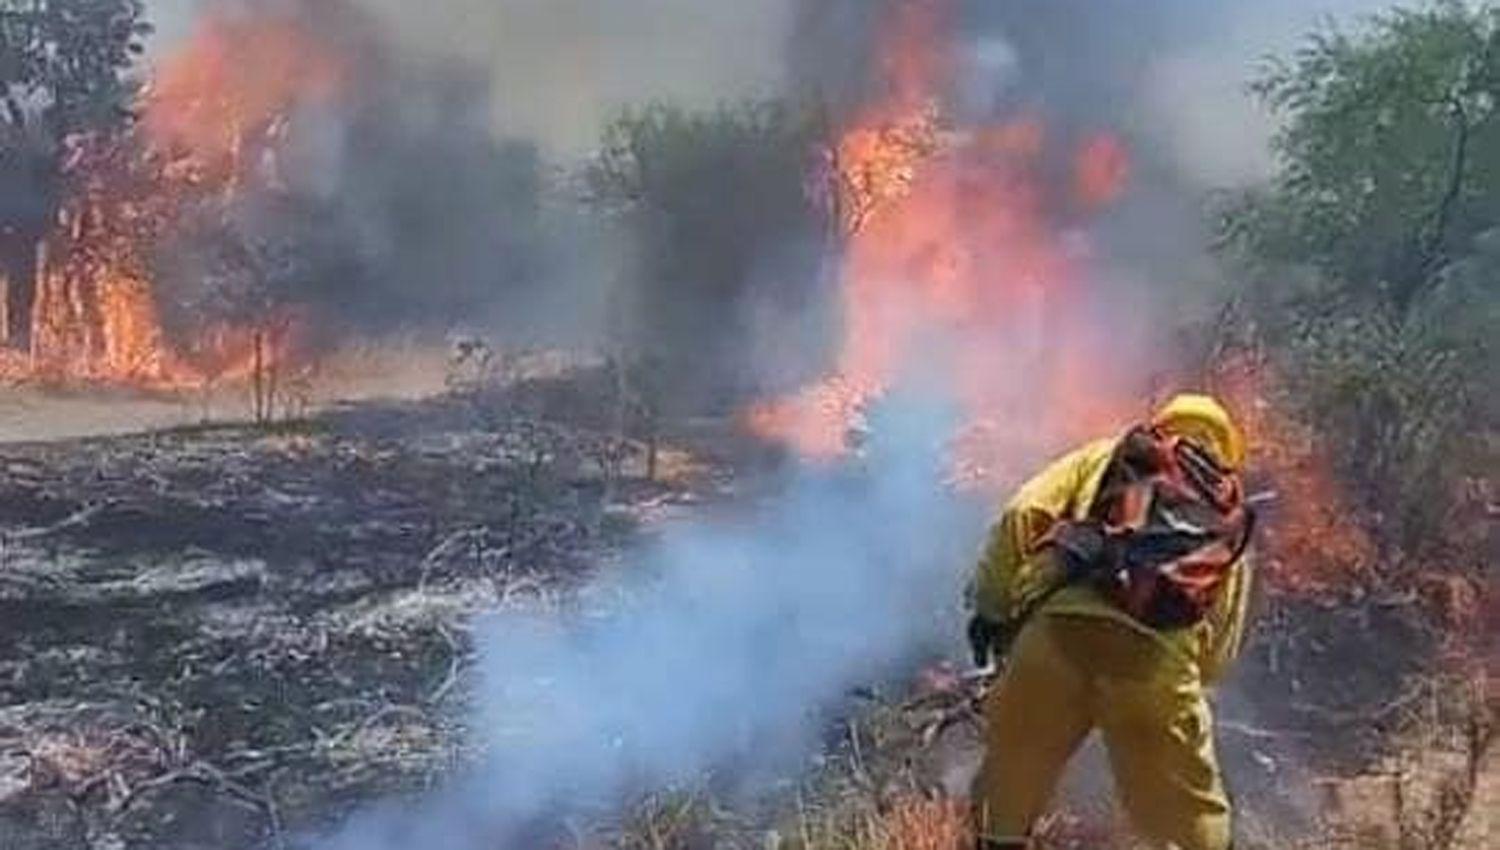 El departamento Riacuteo Hondo tambieacuten sufrioacute incendios de montes